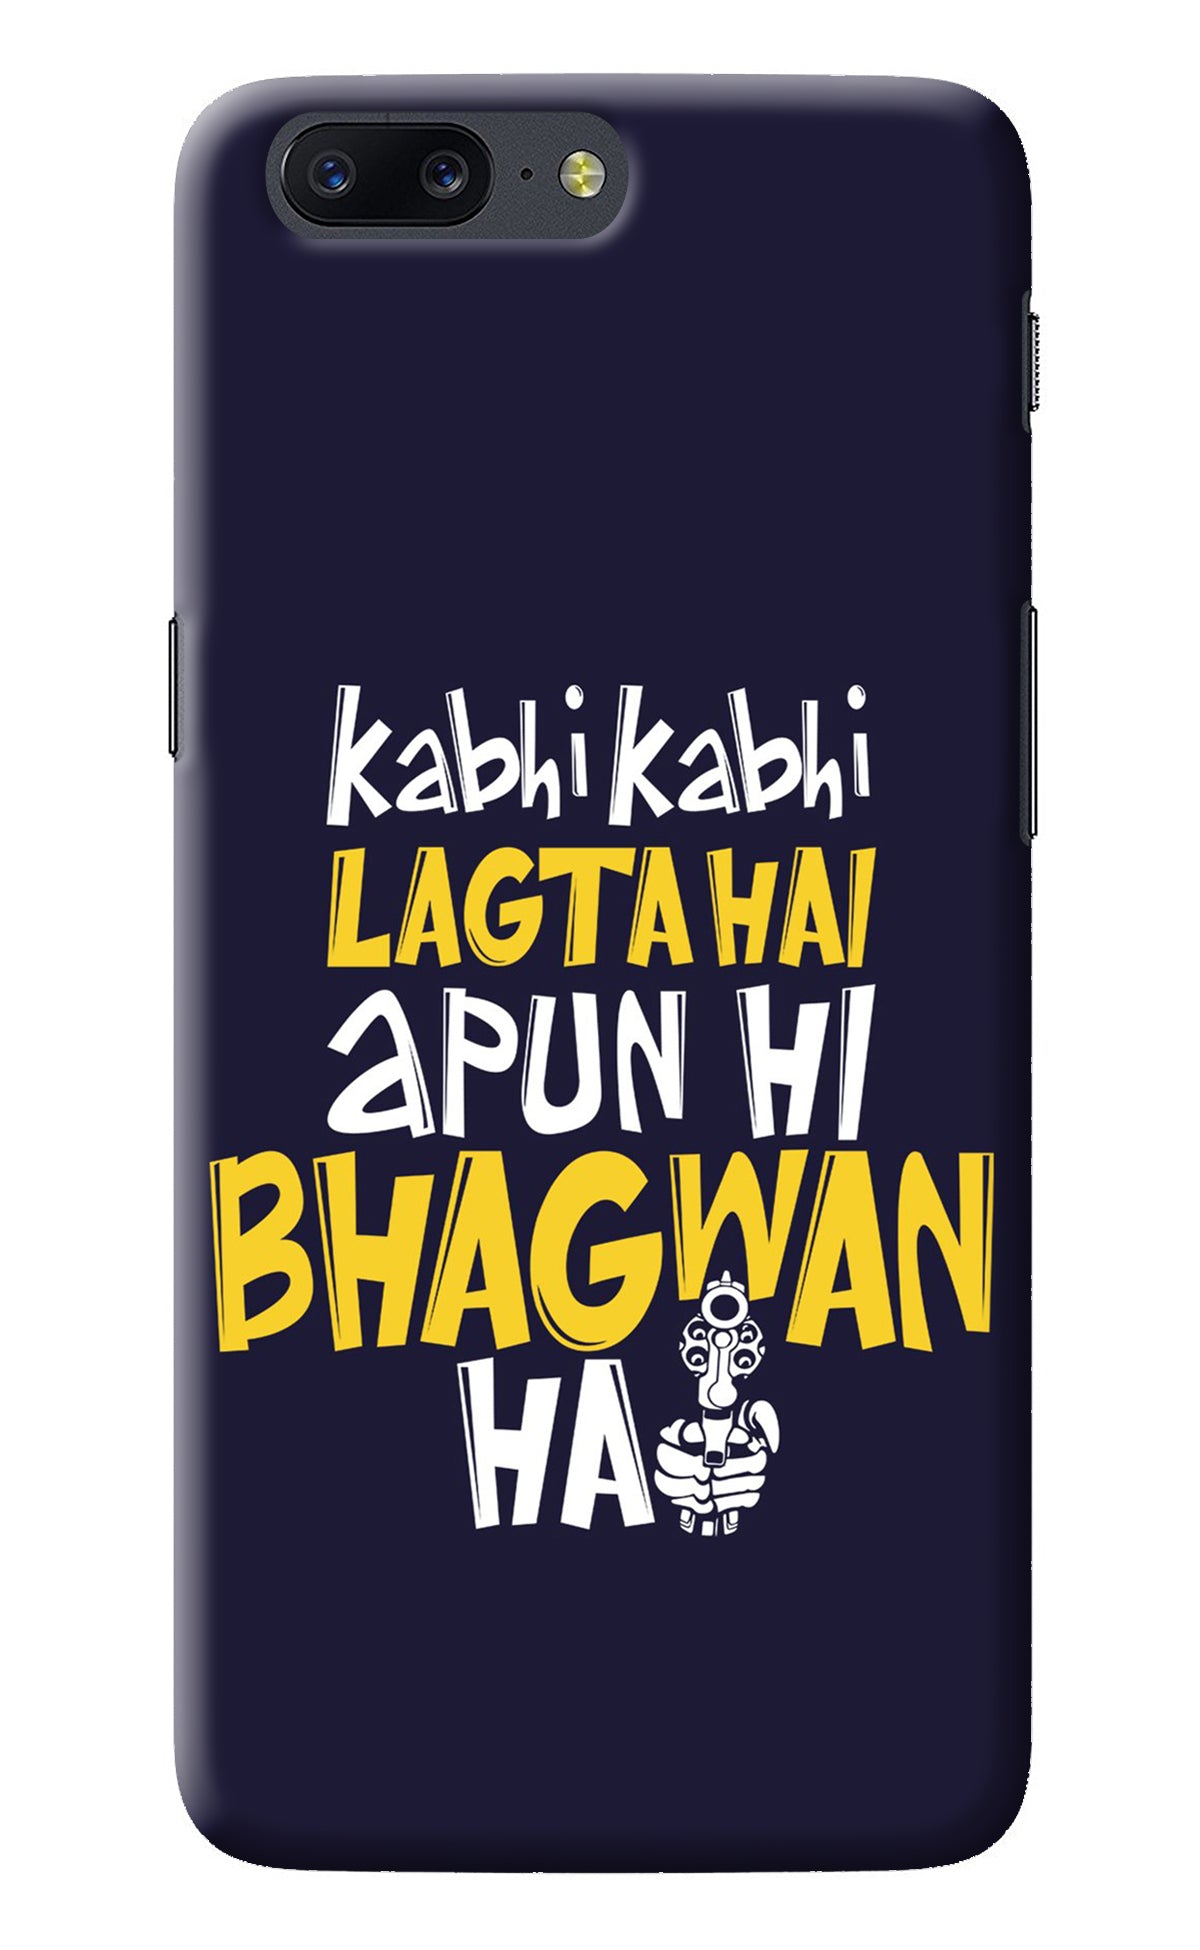 Kabhi Kabhi Lagta Hai Apun Hi Bhagwan Hai Oneplus 5 Back Cover